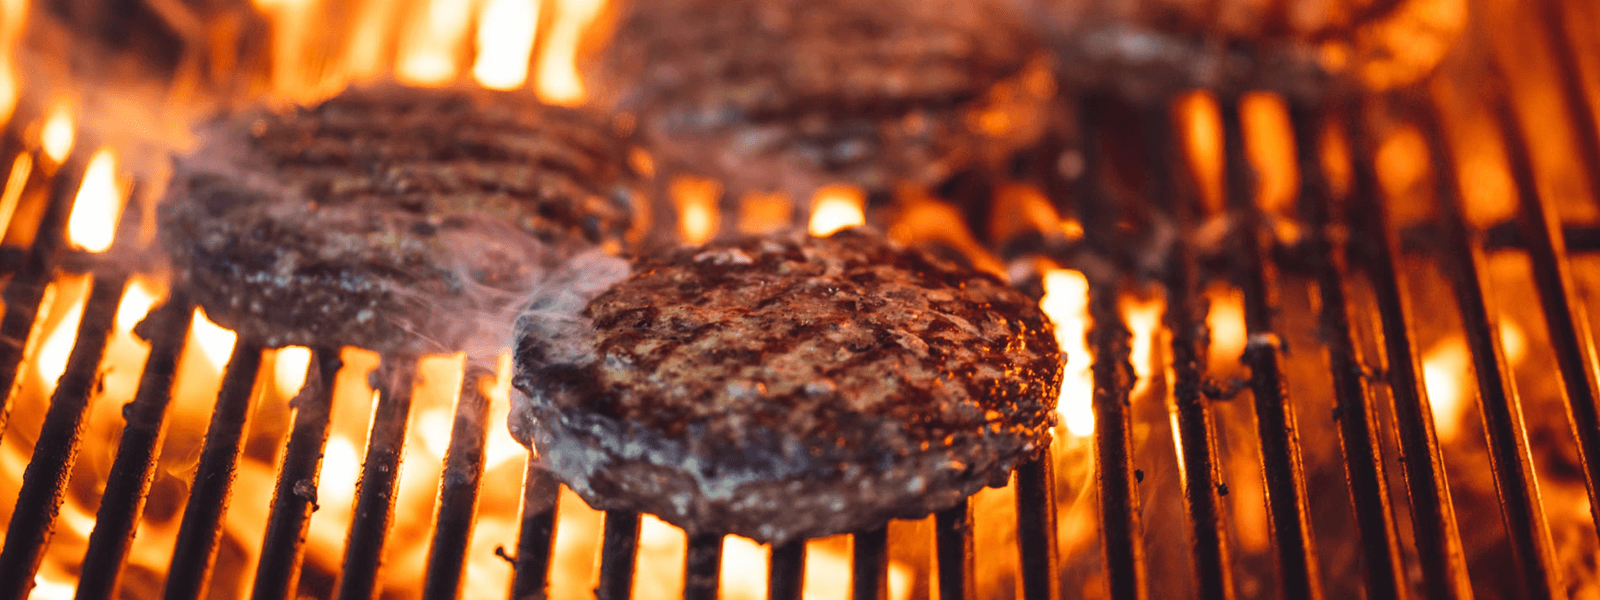 smażone burgery na grillu, dookoła płomienie